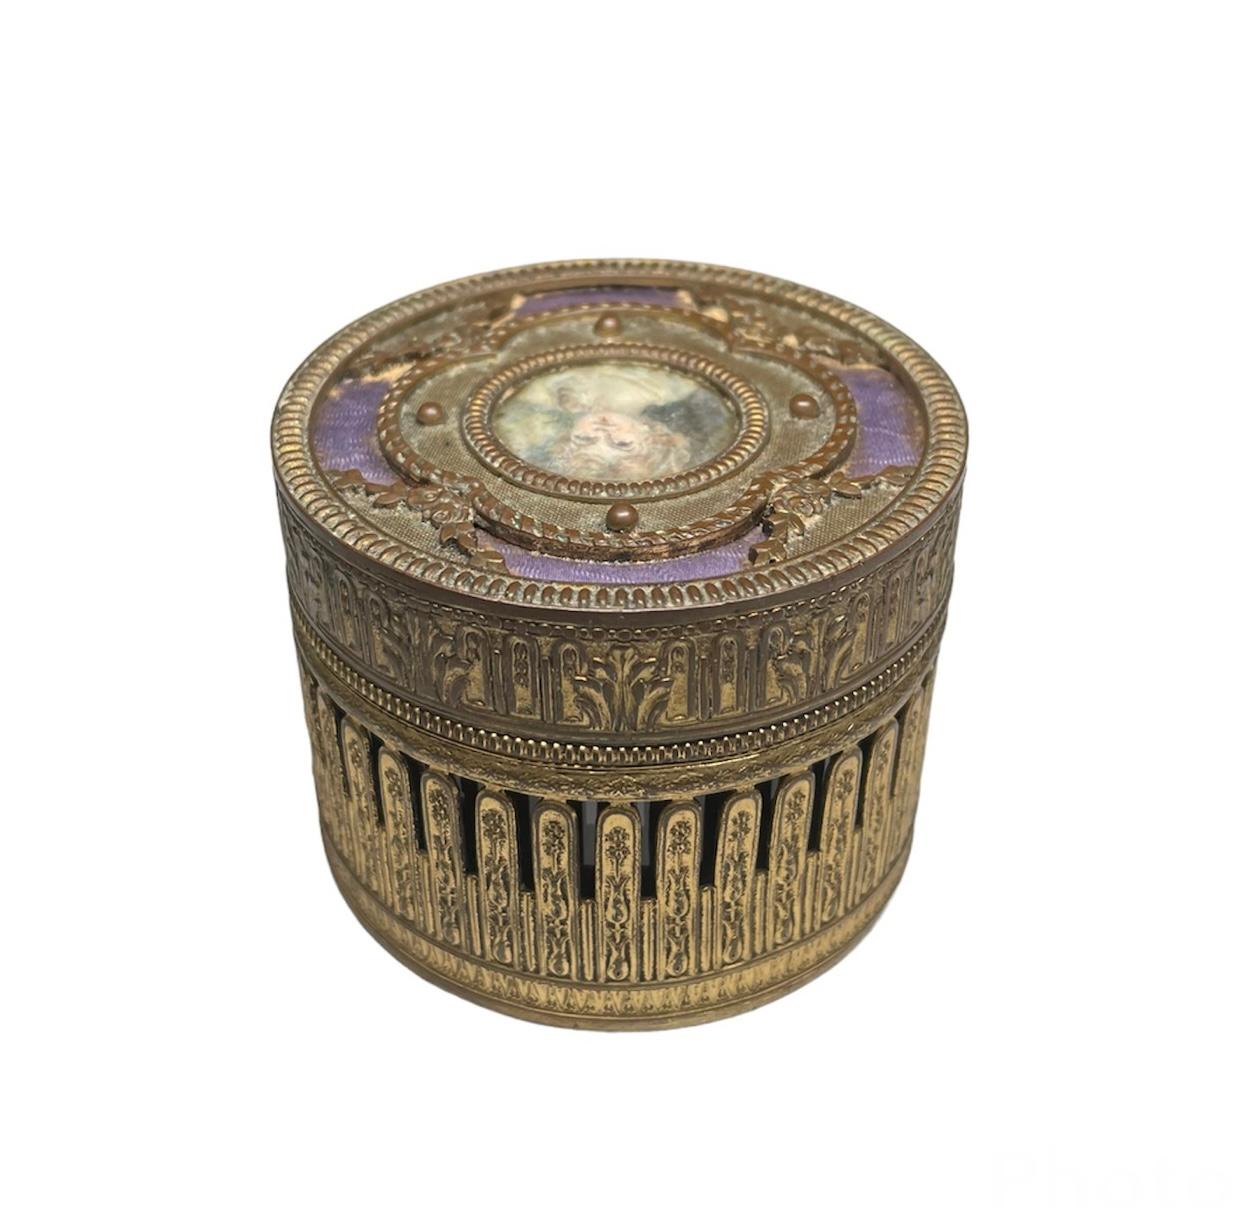 Il s'agit d'une boîte ronde à couvercle en métal bronze patiné. Elle représente une boîte métallique ronde et percée, décorée d'un relief de feuillages. Le couvercle est orné au centre d'un portrait peint à la main d'une jeune fille encadrée d'un